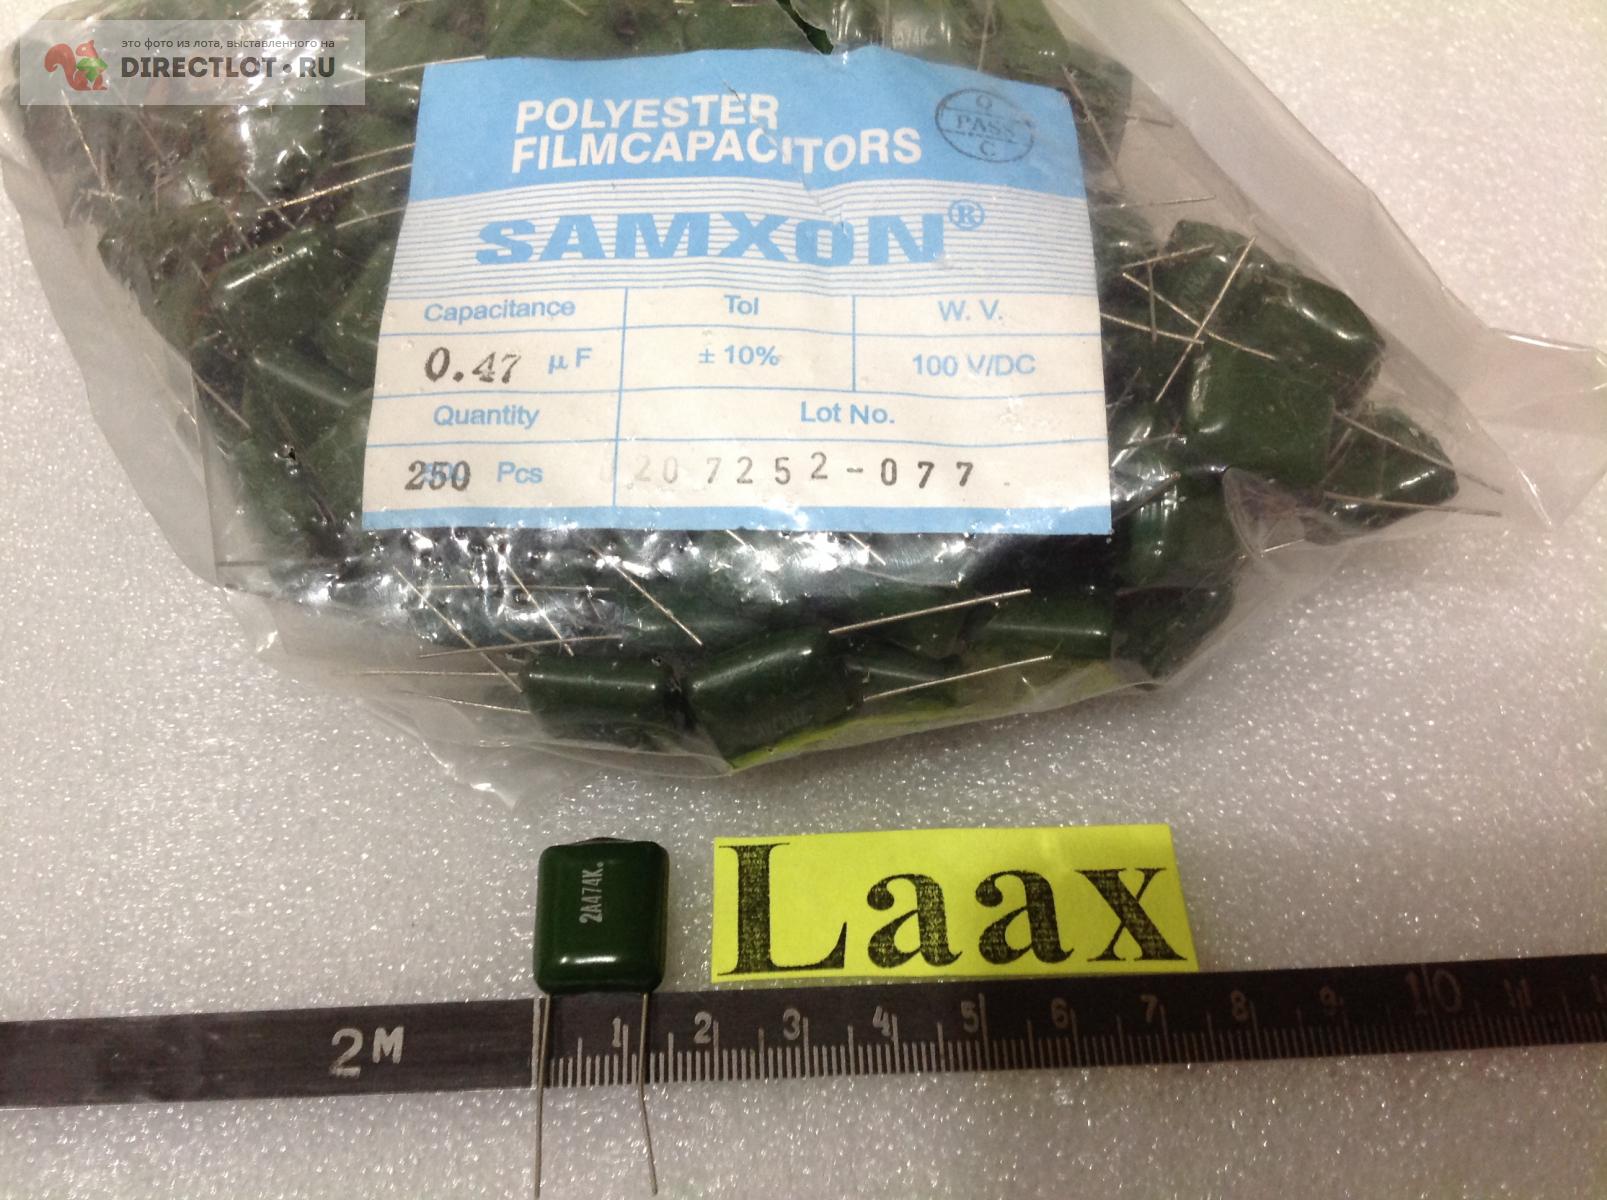  0,47 мкф +/-10% 100В SAMXON  в Владимире цена 3,00 Р .